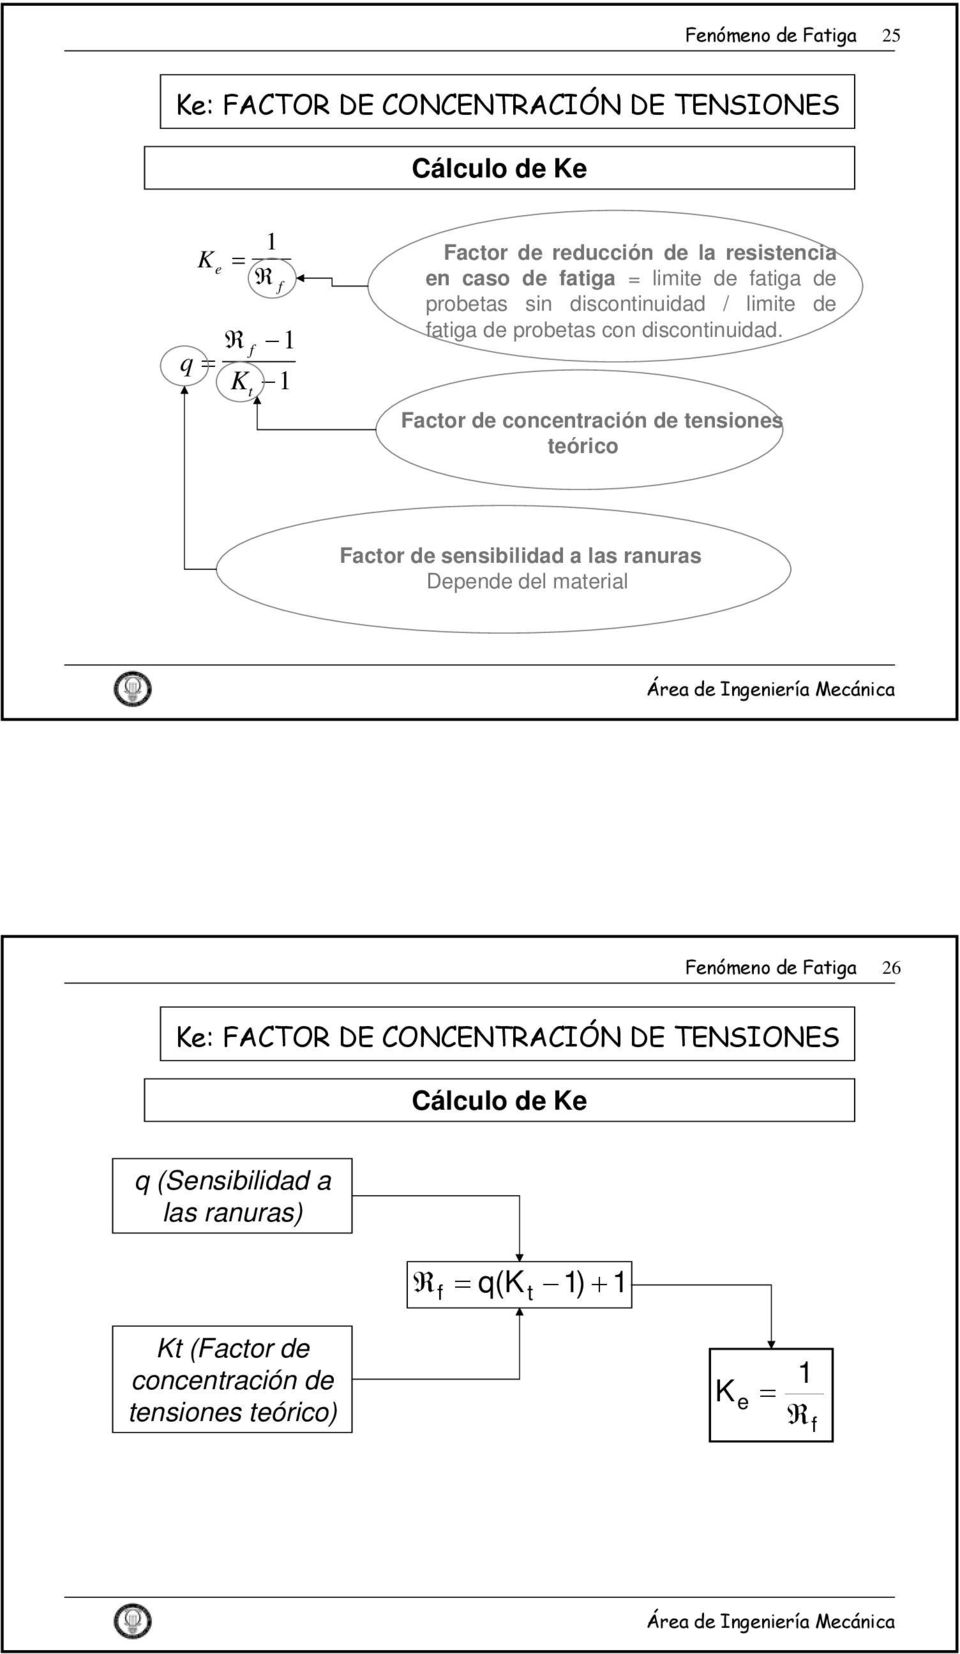 Factor de concentración de tensiones teórico Factor de sensibilidad a las ranuras Depende del aterial Fenóeno de Fatiga 26 Ke: